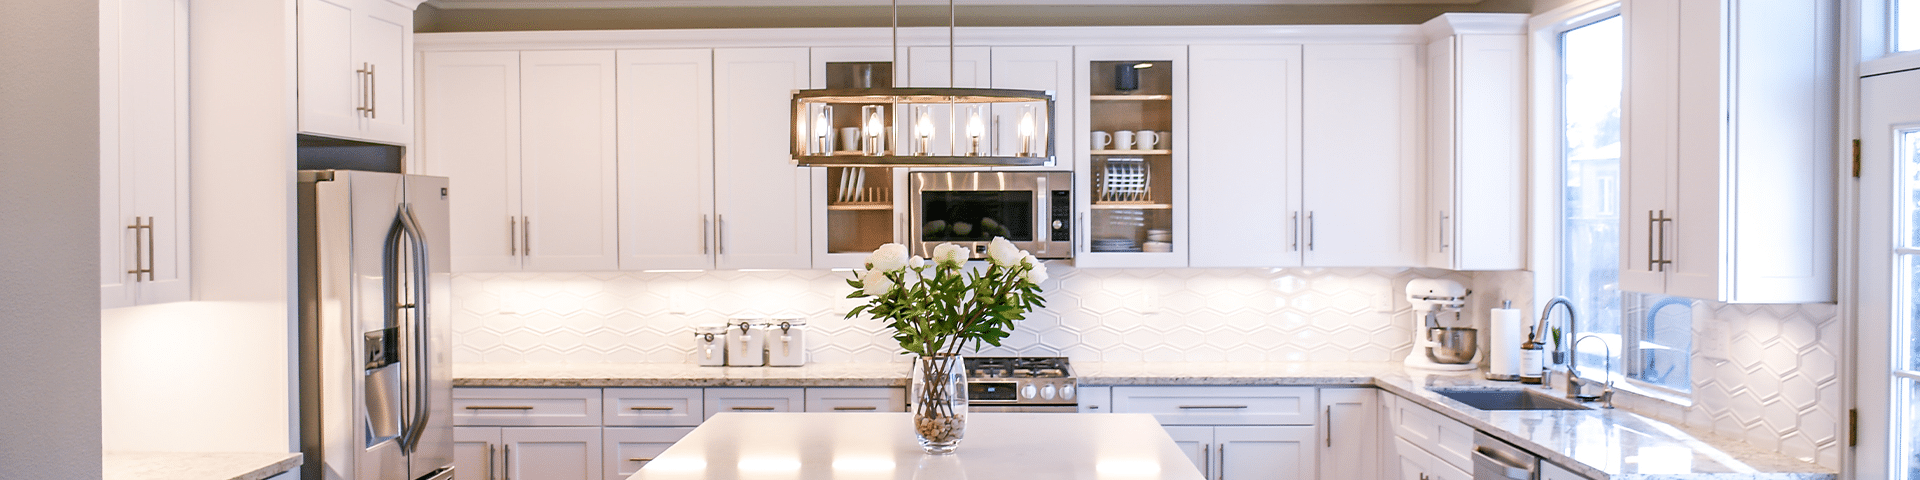 white kitchen with chandelier